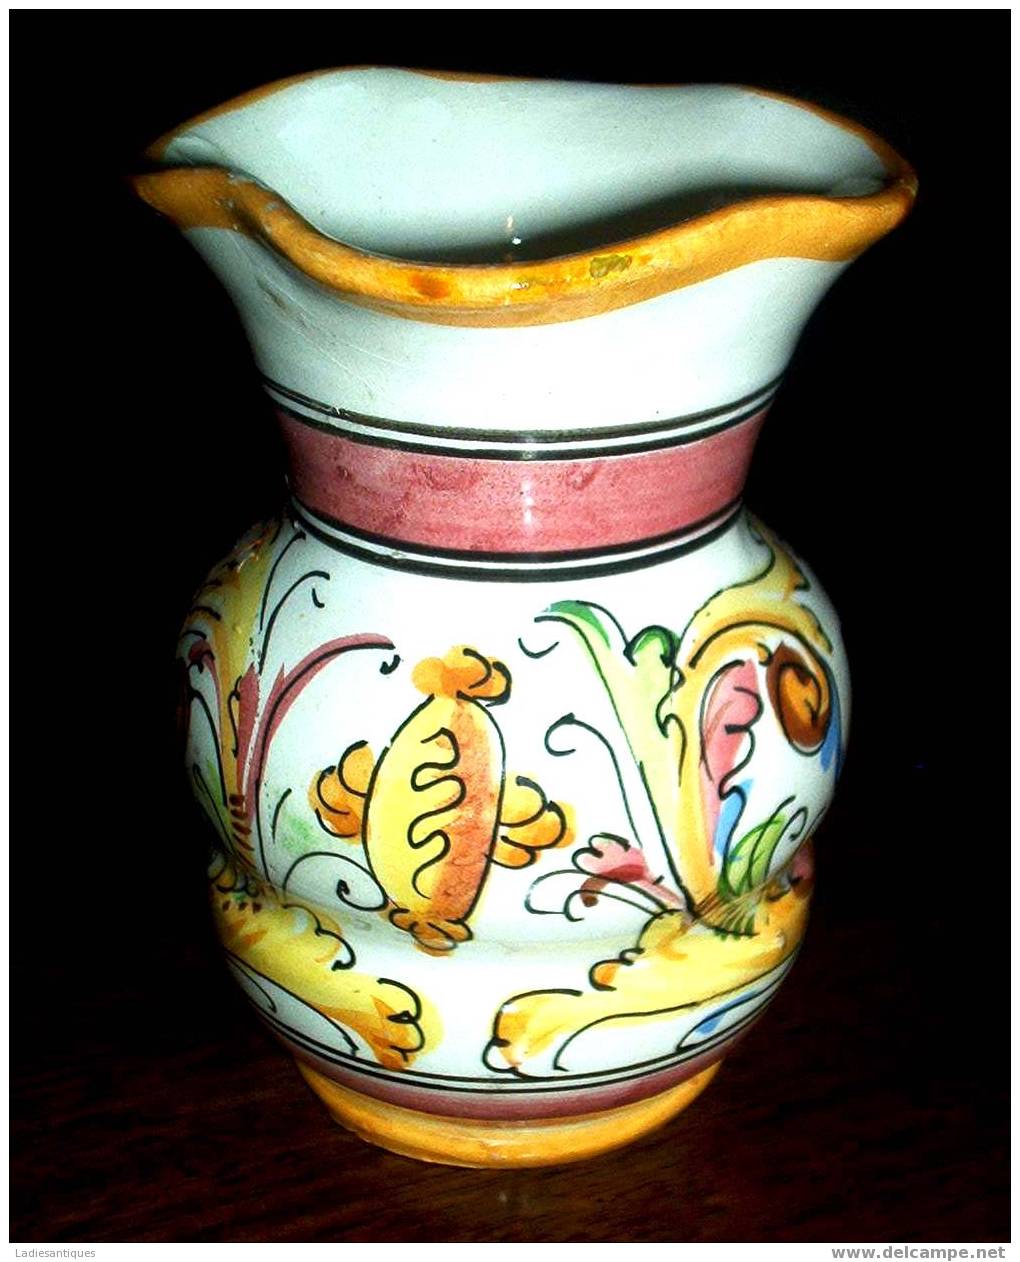 Arno - Little Vase - Vaasje - Petit Vase - VA 241 - Arno Fiorentino (ITA)